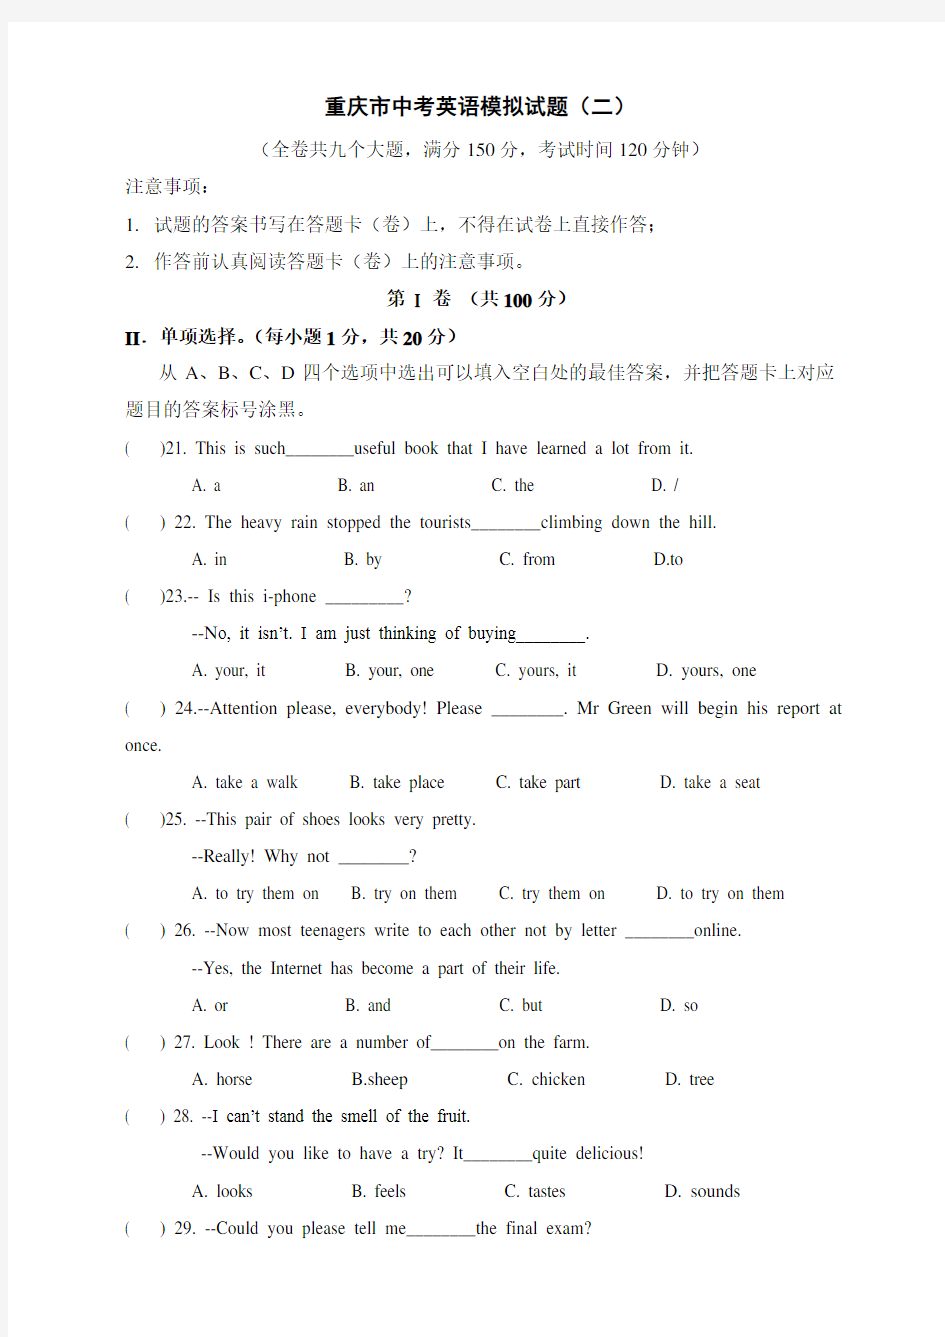 (完整版)重庆市中考英语模拟试题(二)